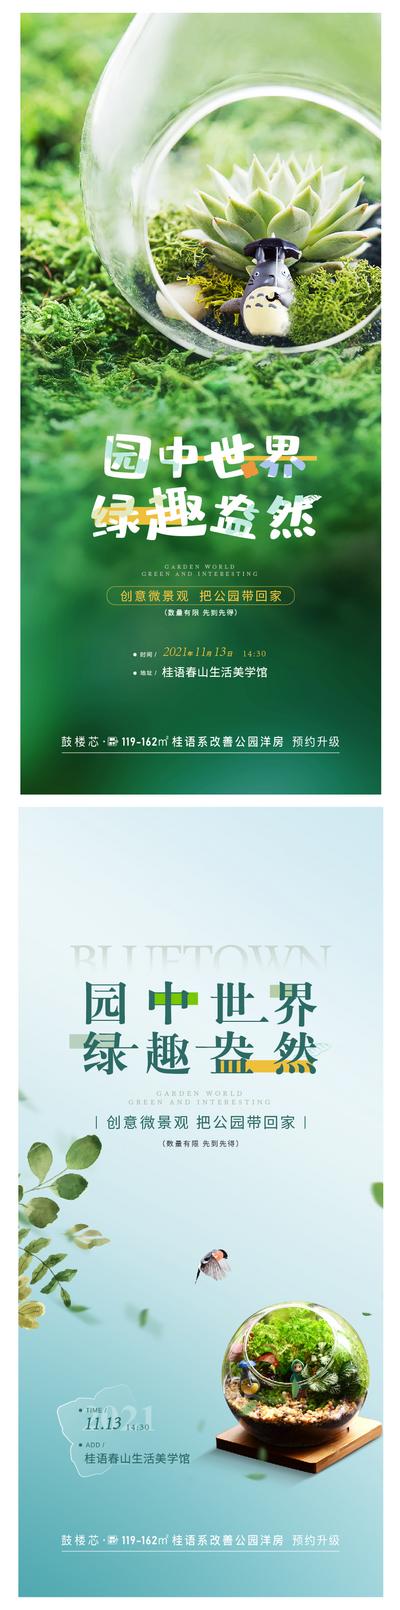 南门网 广告 海报 地产 多肉 景观 盆栽 活动 微景观